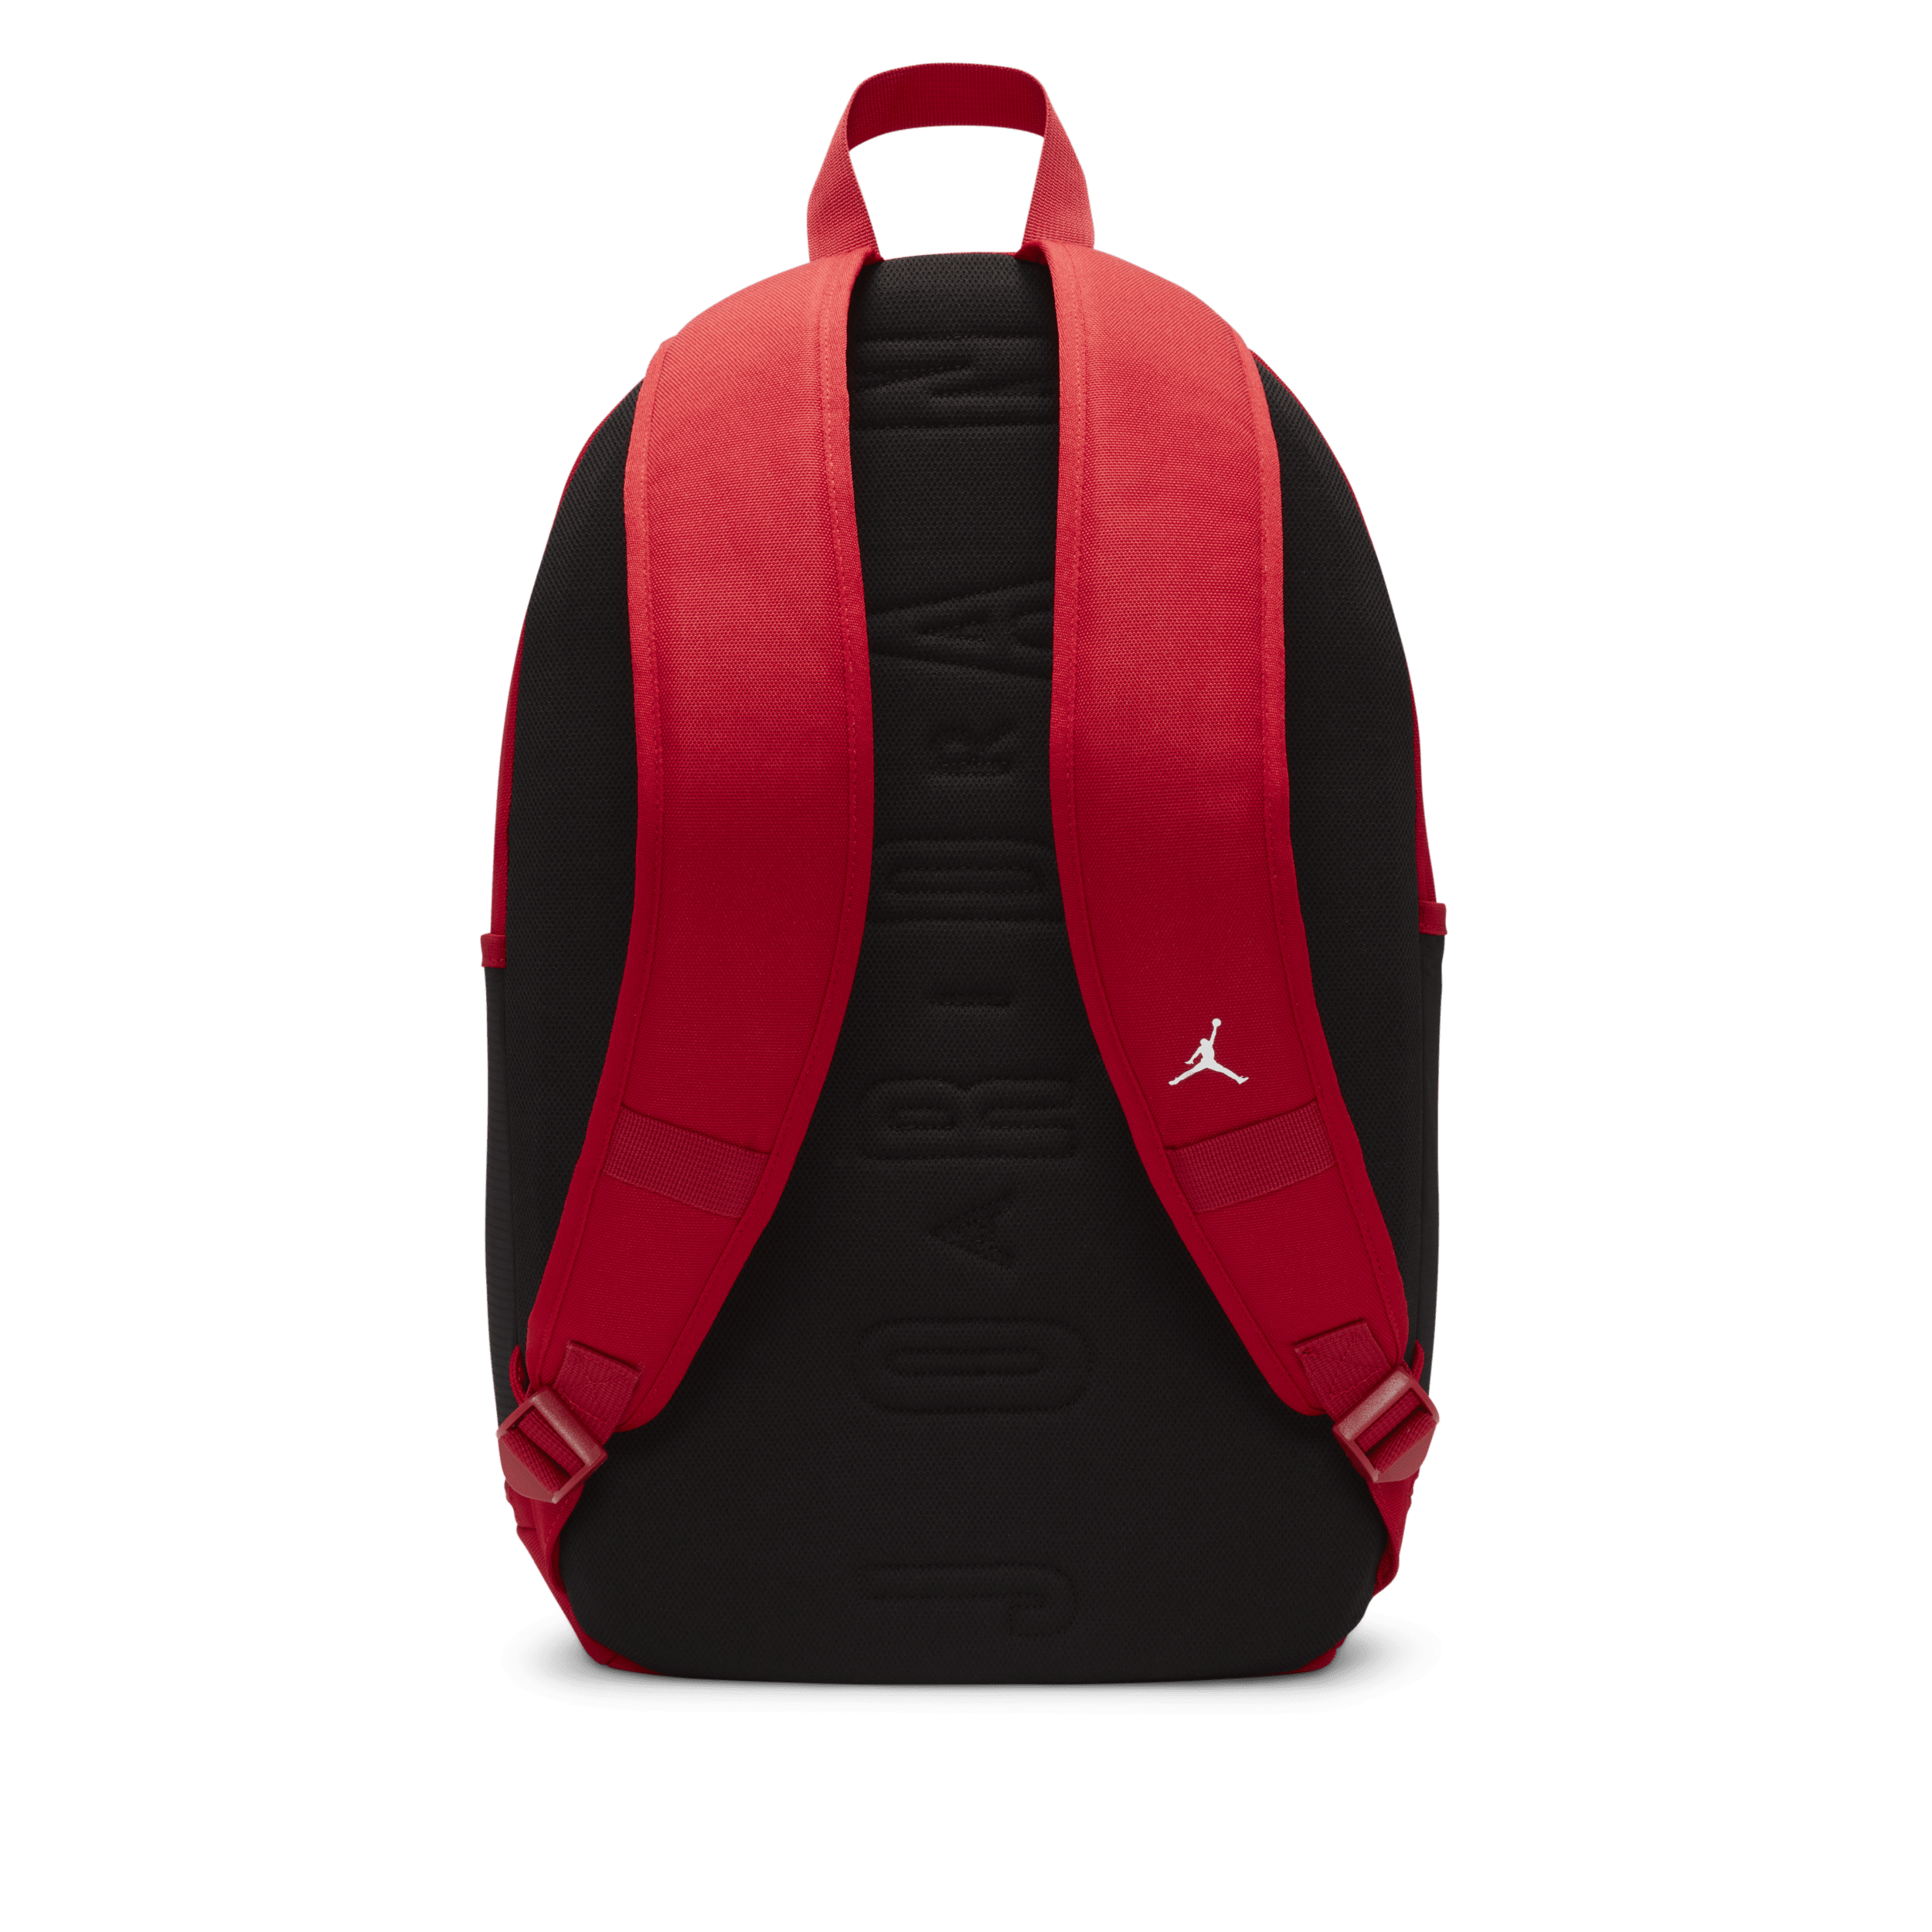 Jordan Jersey Backpack rugzak voor kids (27 liter) Rood